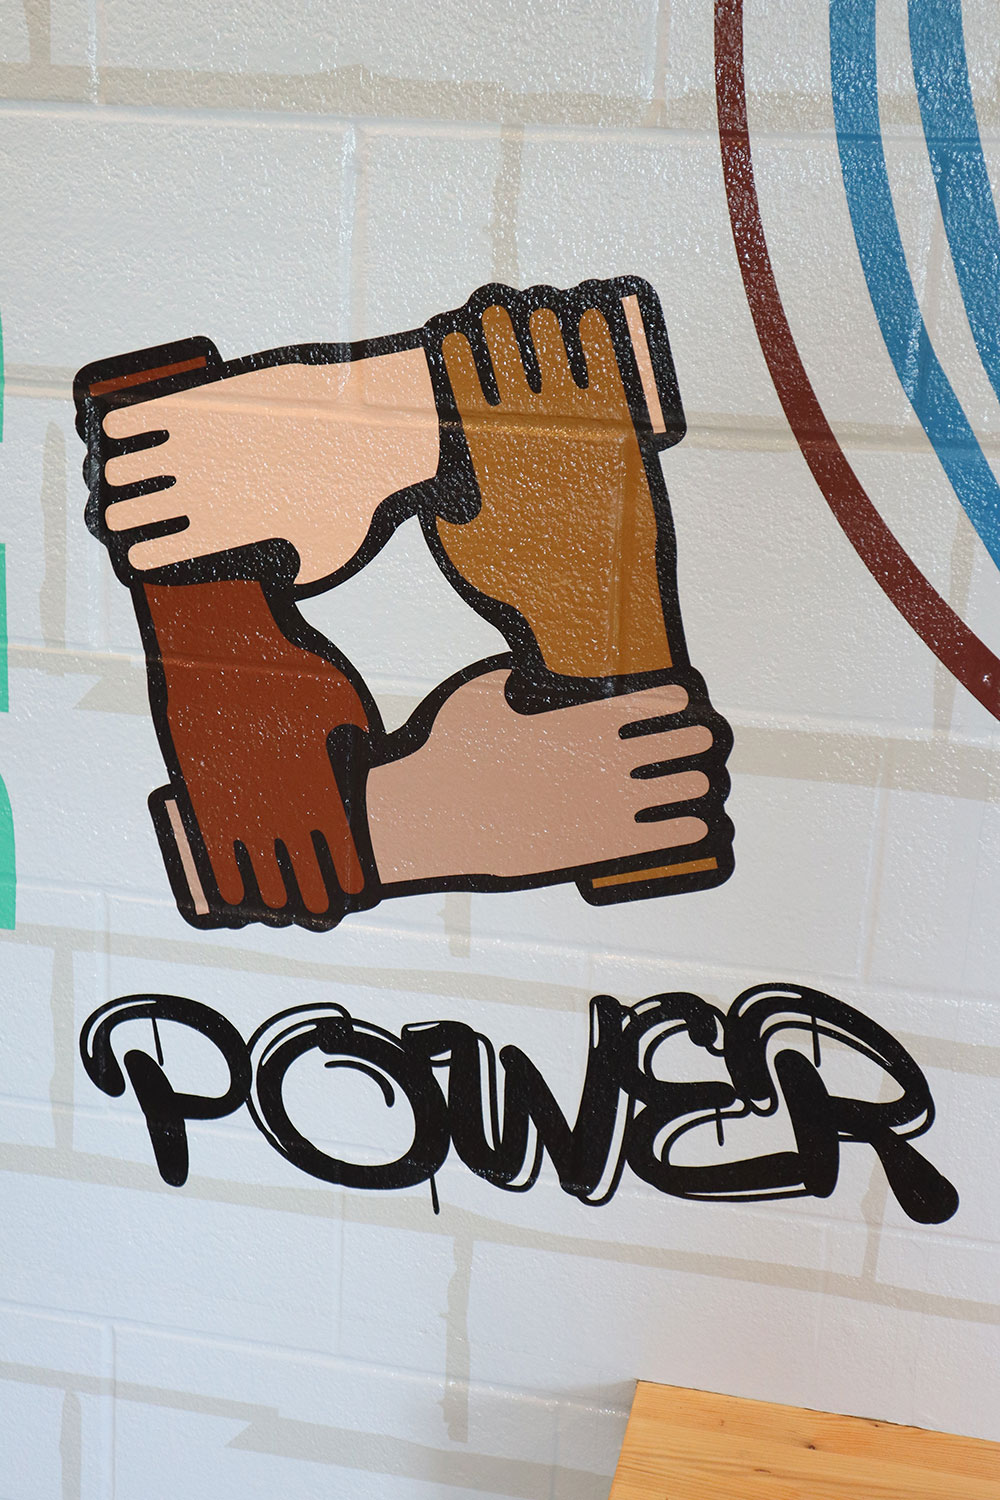 WOW! - Social Justice Graffiti Mural